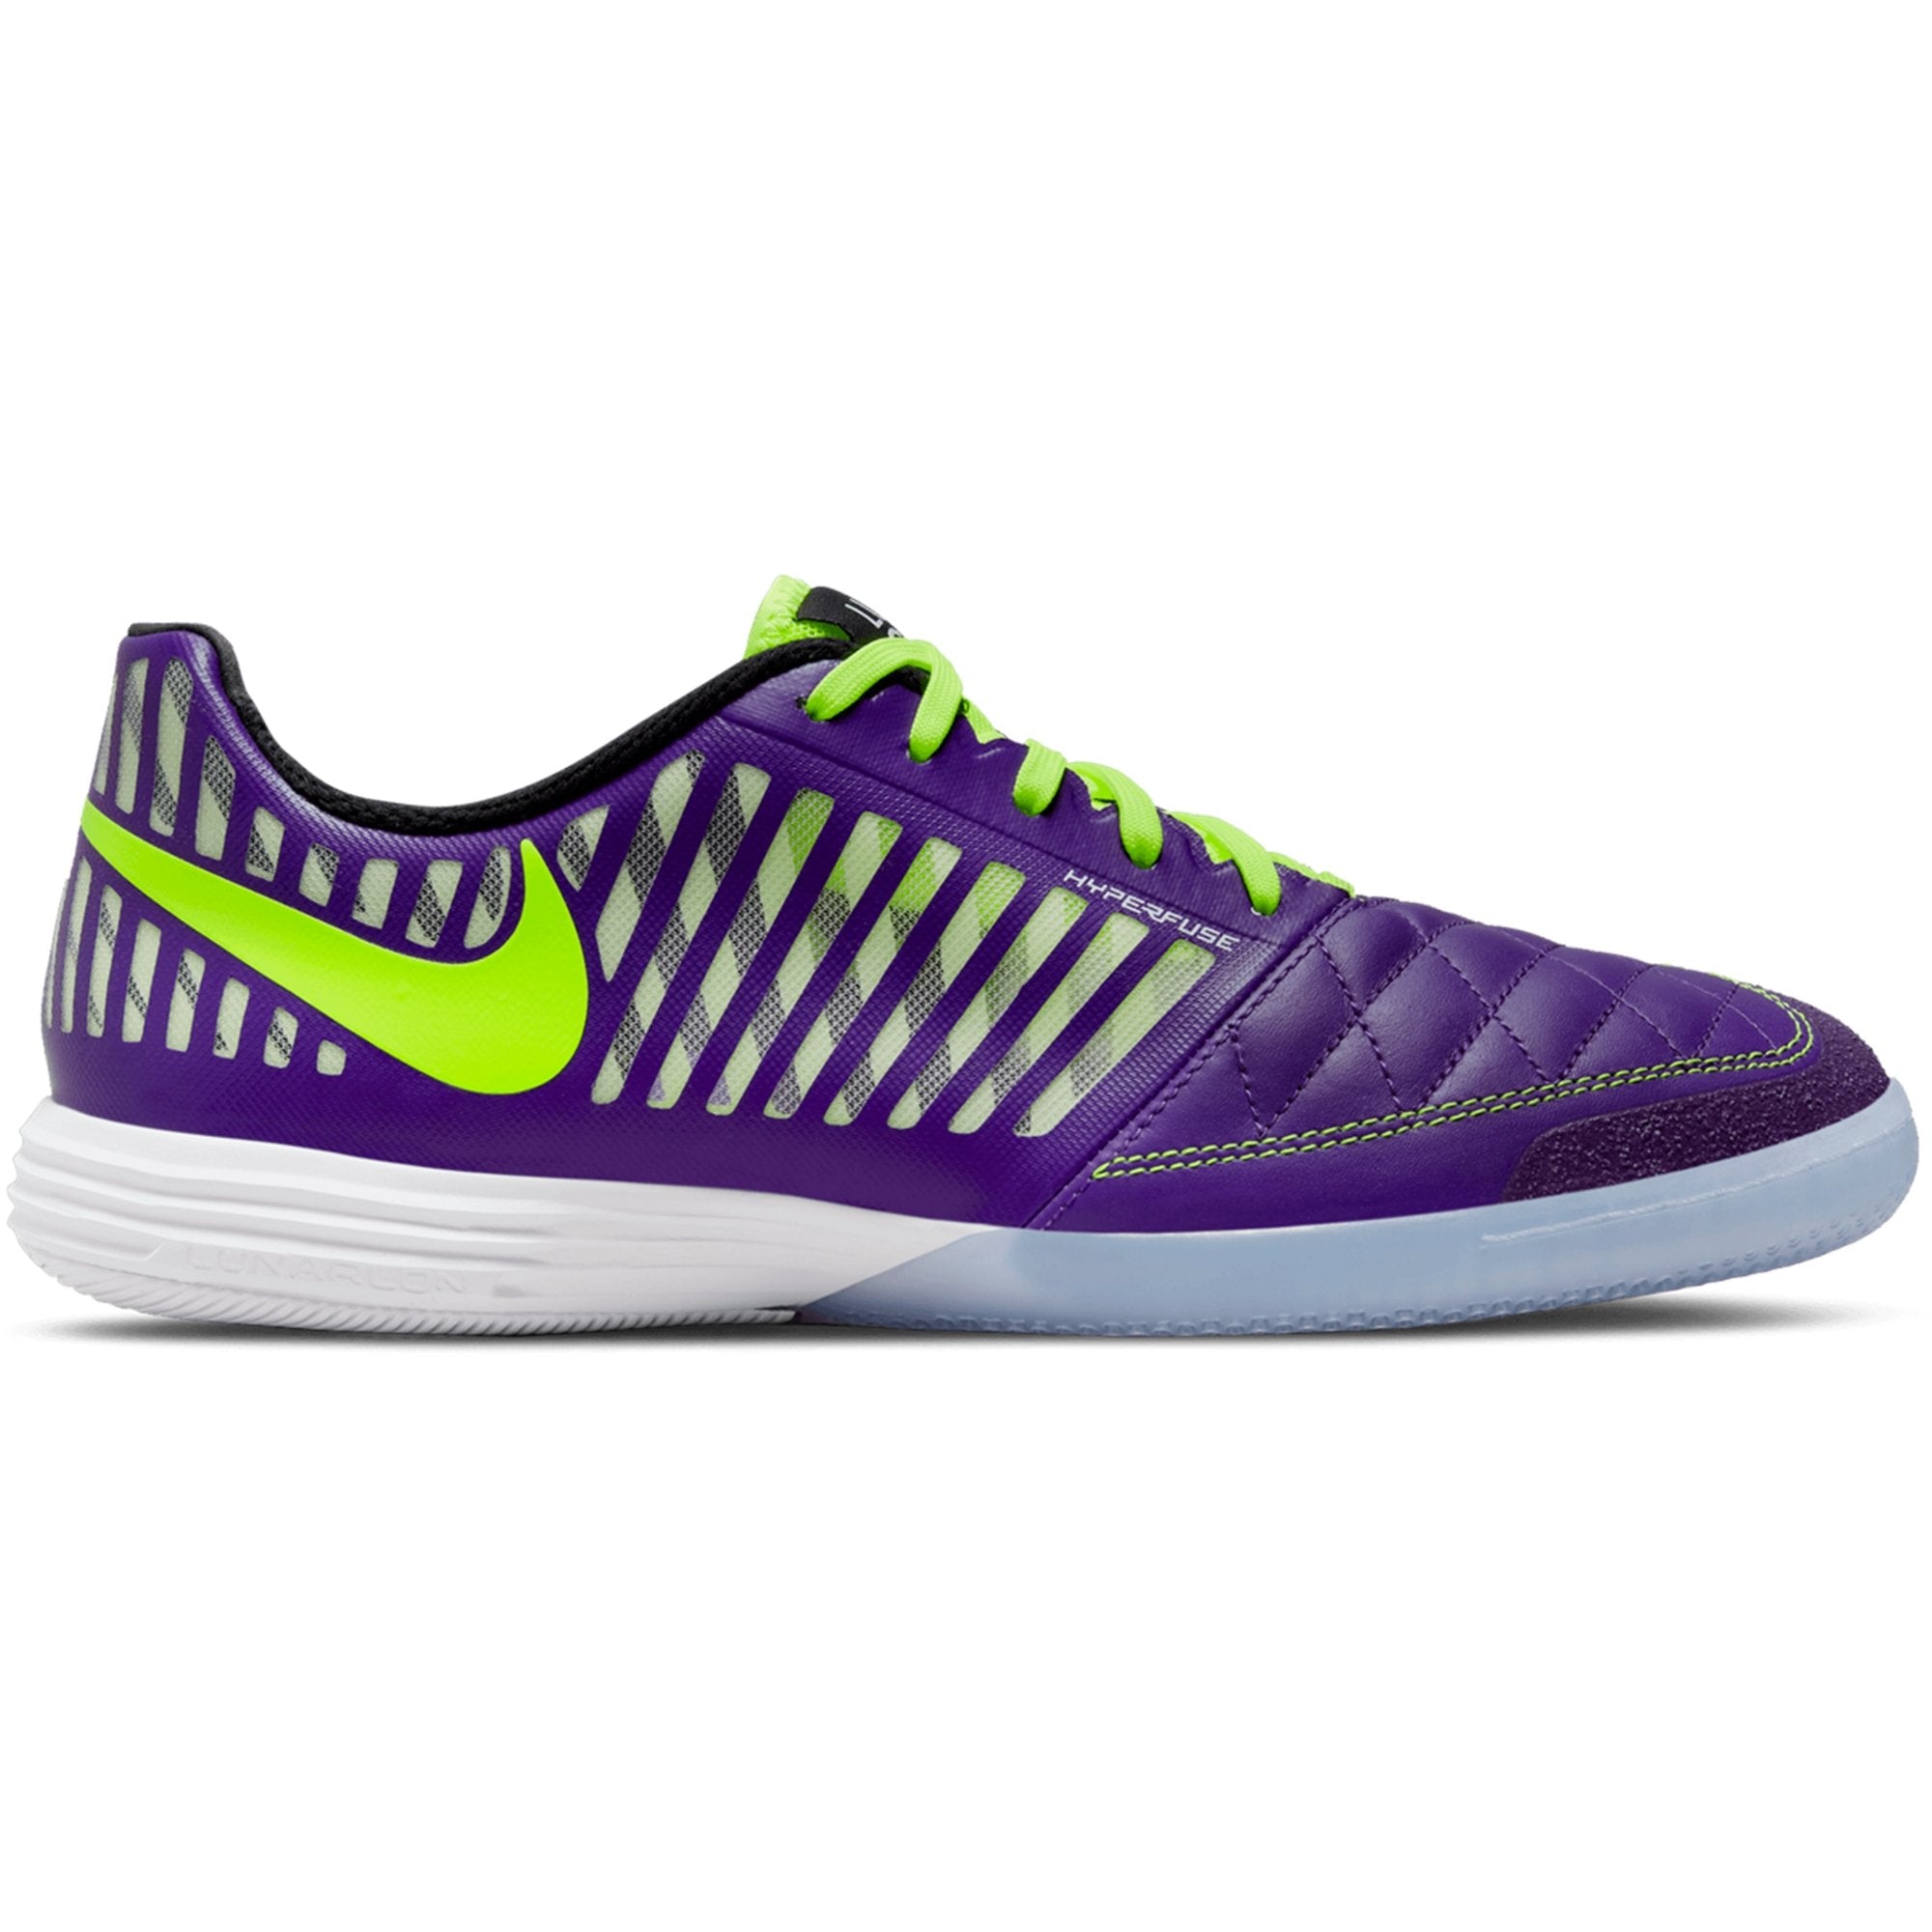 Nike Lunar II Indoor Soccer Shoes: Electro Purple/Volt/Black/White 580456-570 – Soccer USA